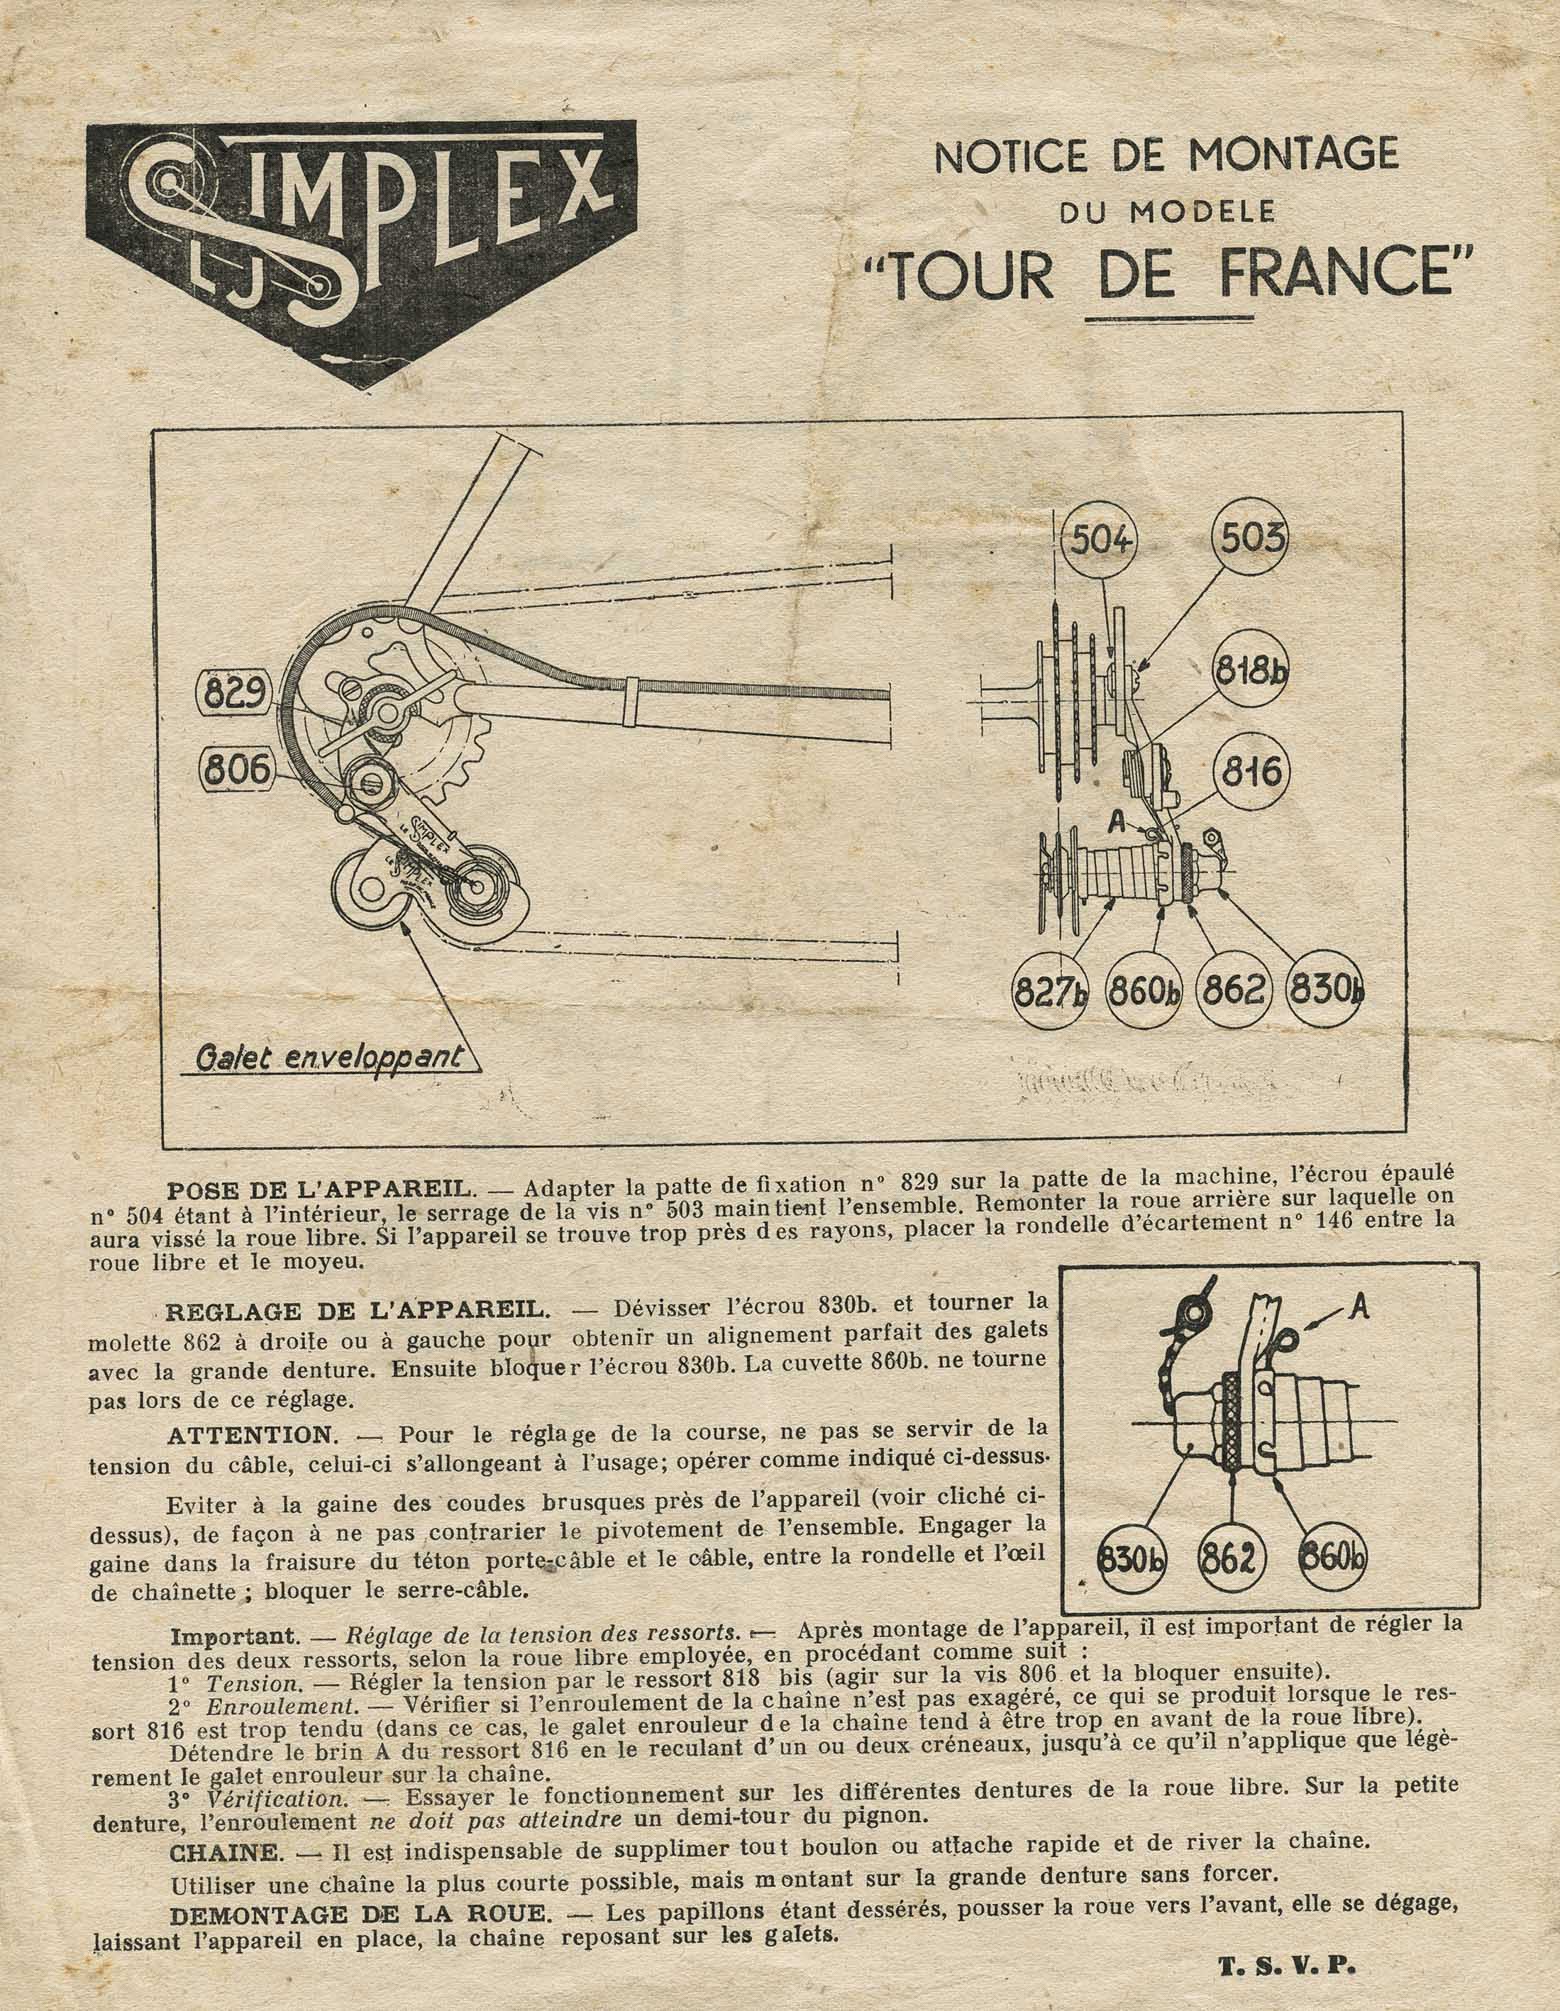 Simplex Tour de France - Notice de Montage (2nd style) scan 1 main image